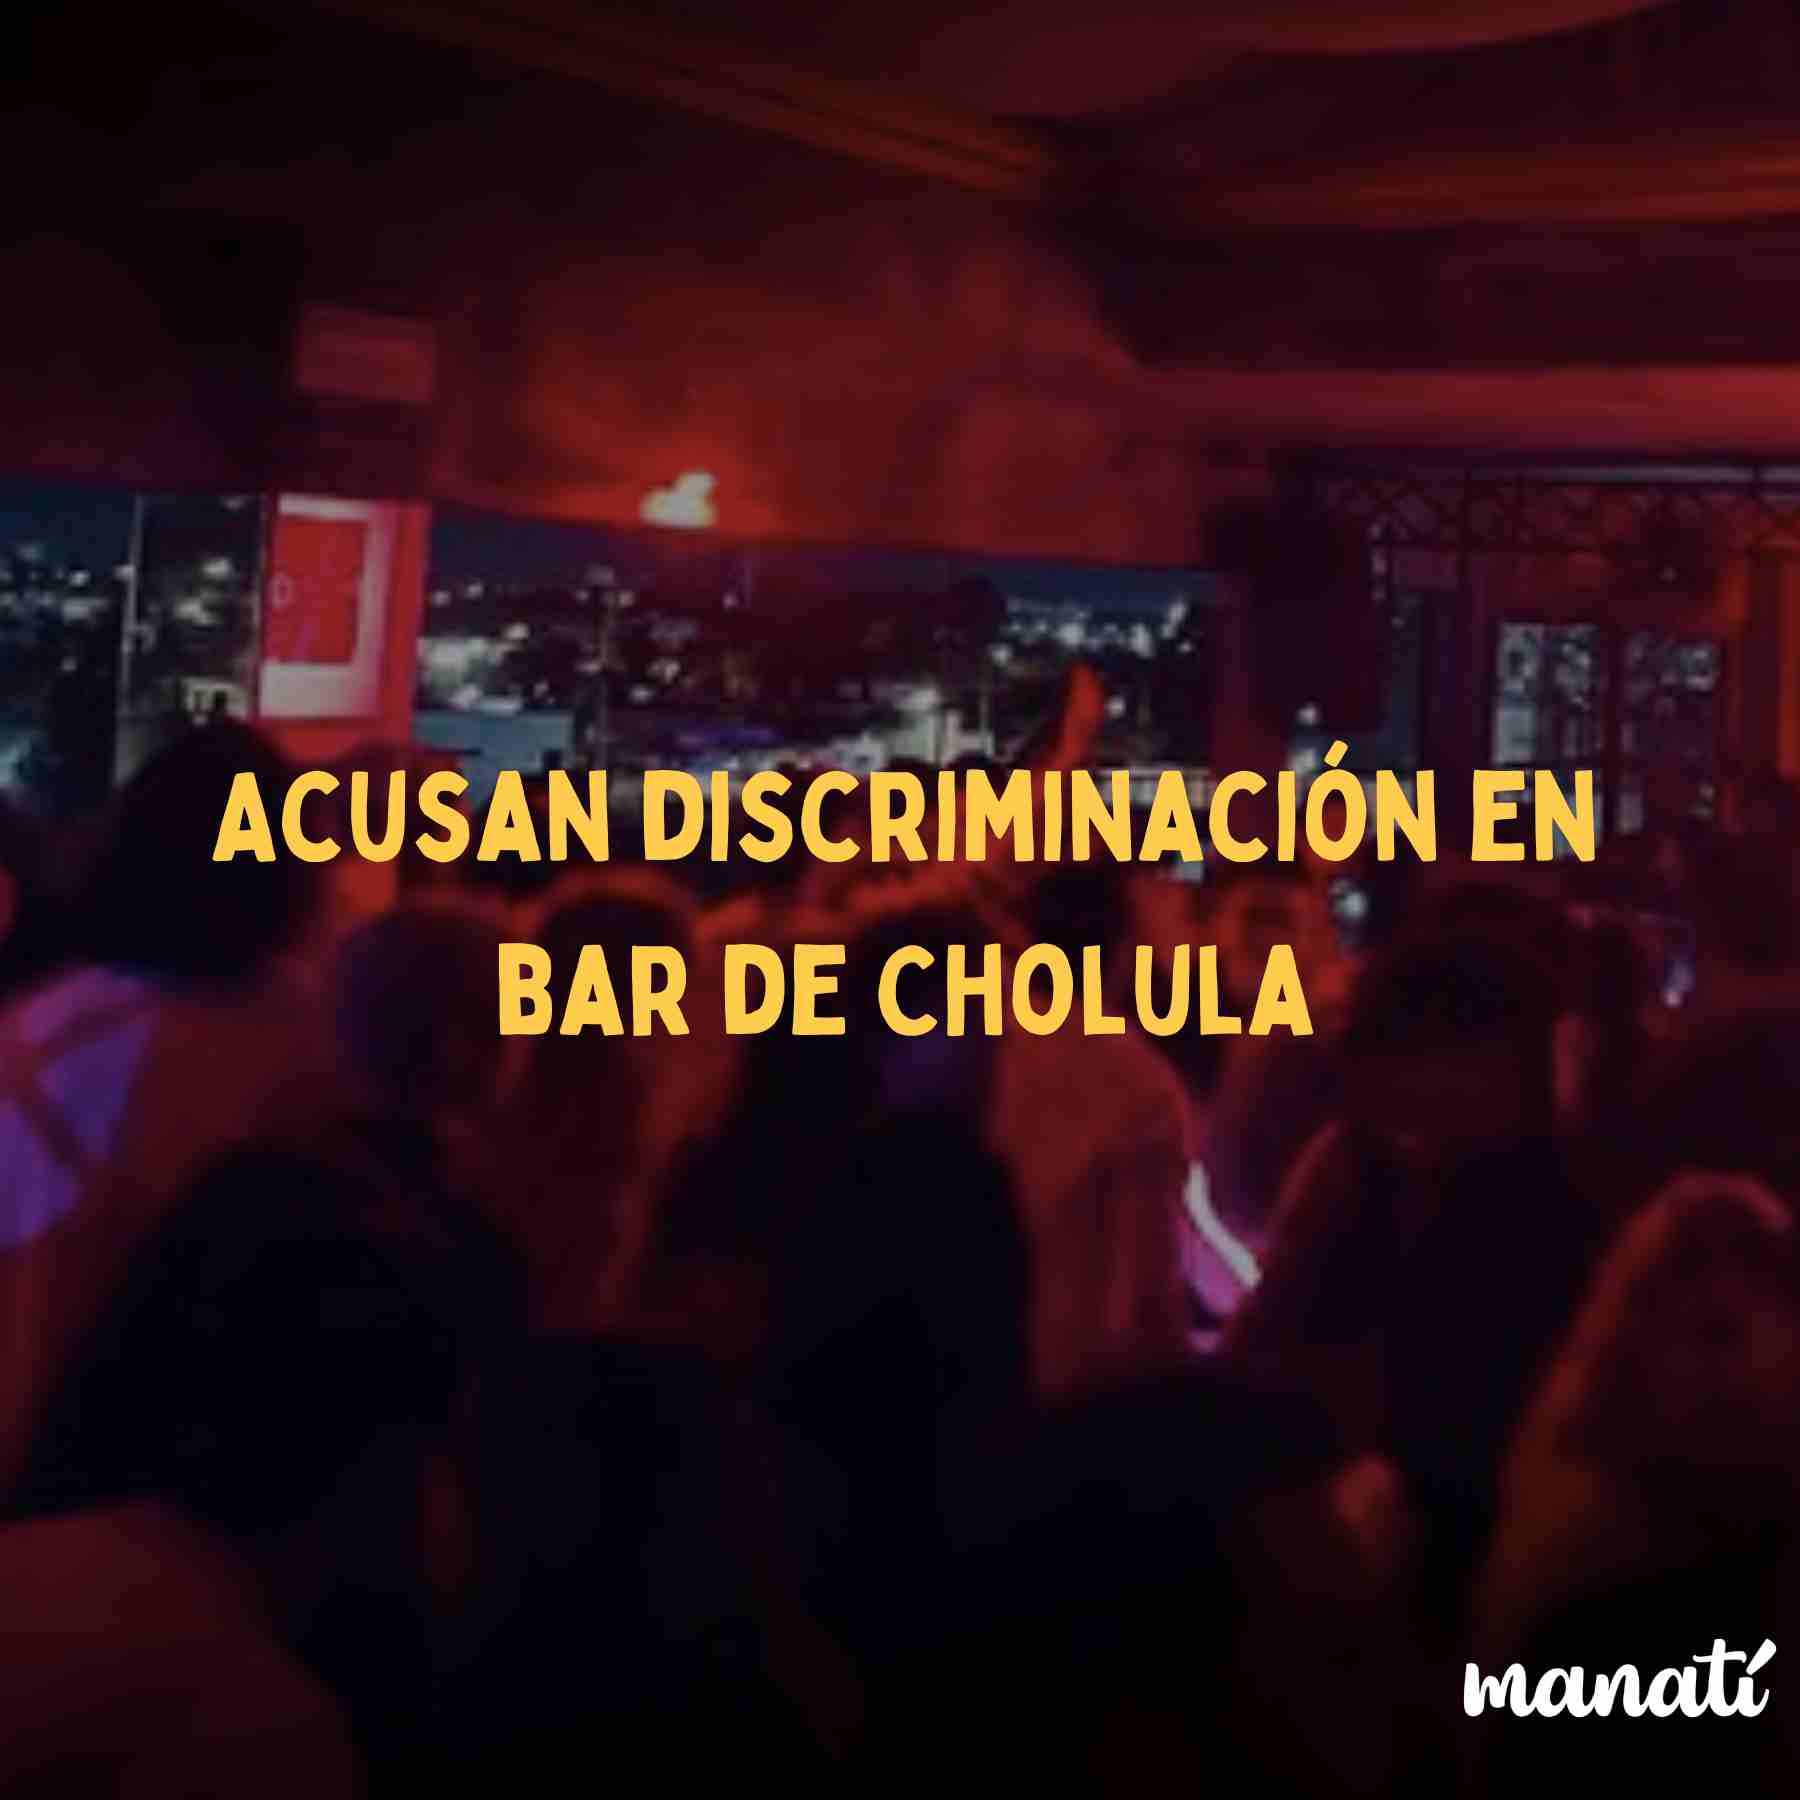 discriminación cholula bar